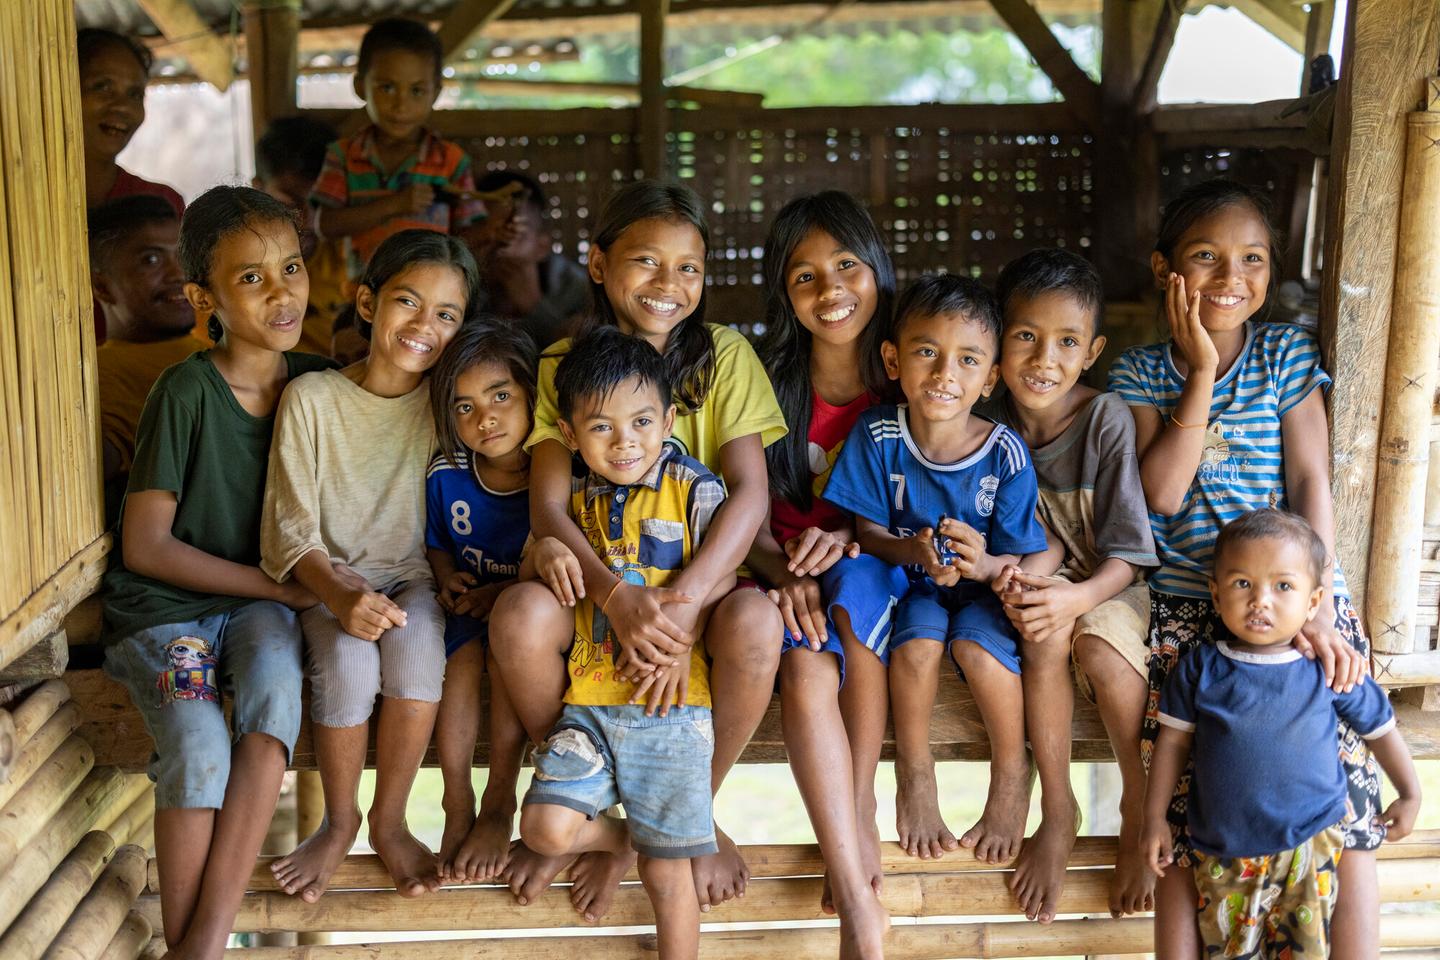 Children in Indonesia